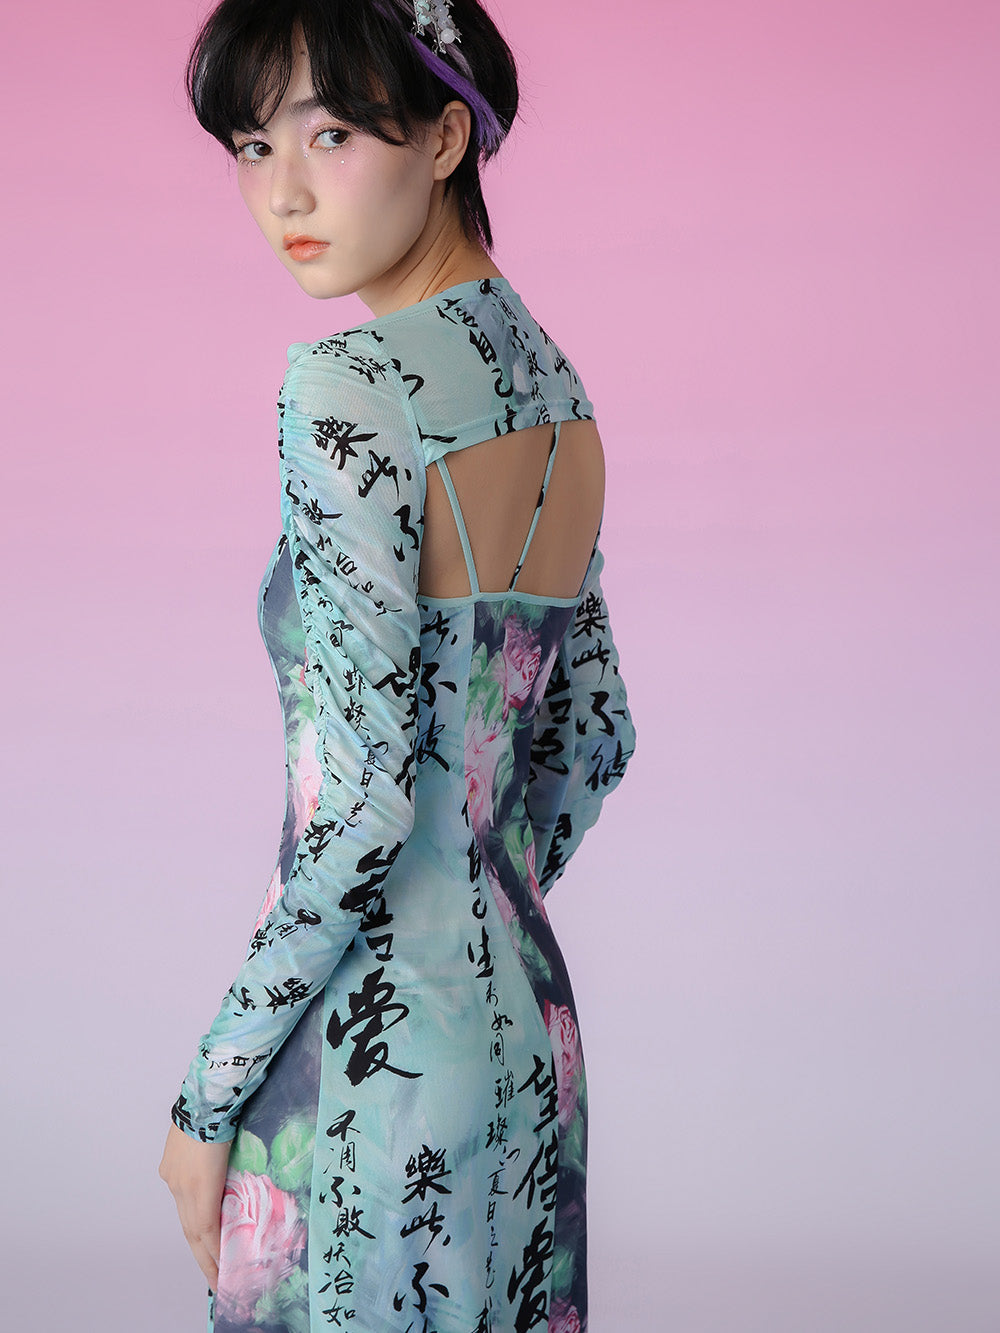 MUKZIN Detachable Long Sleeve Cape Two Piece Cutout Dress